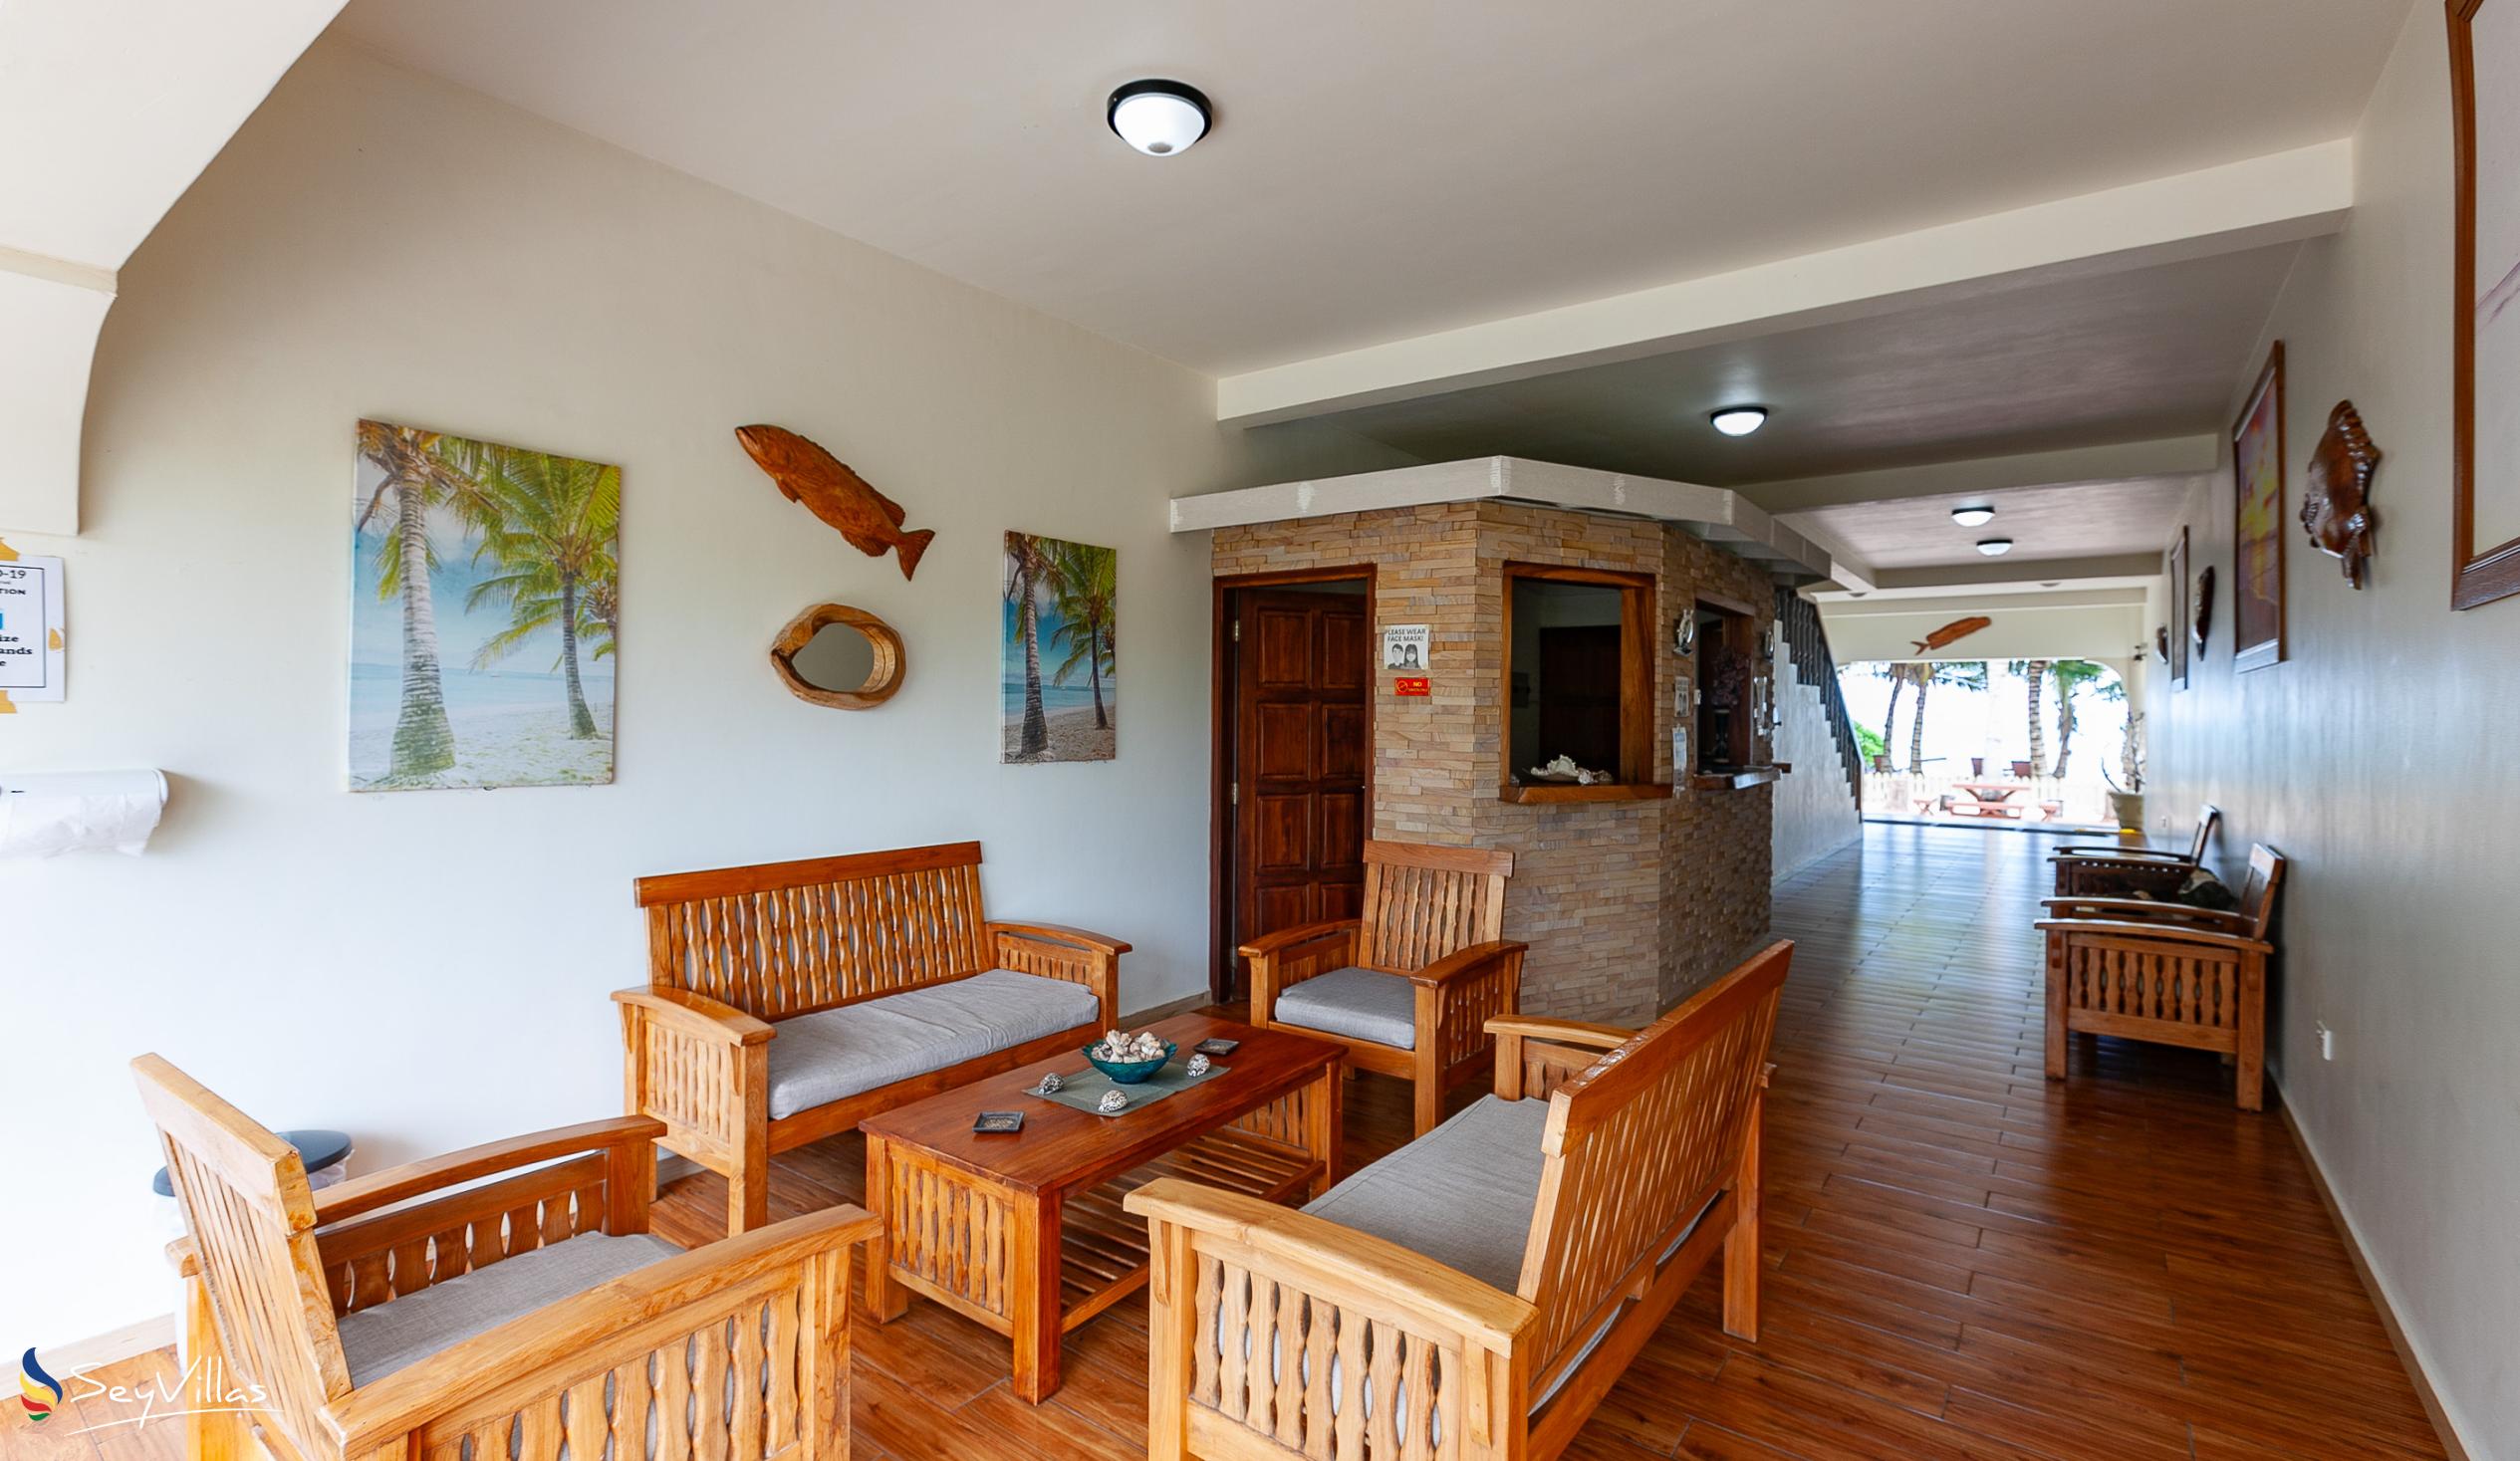 Photo 15: Seashell Beach Villa - Indoor area - Praslin (Seychelles)